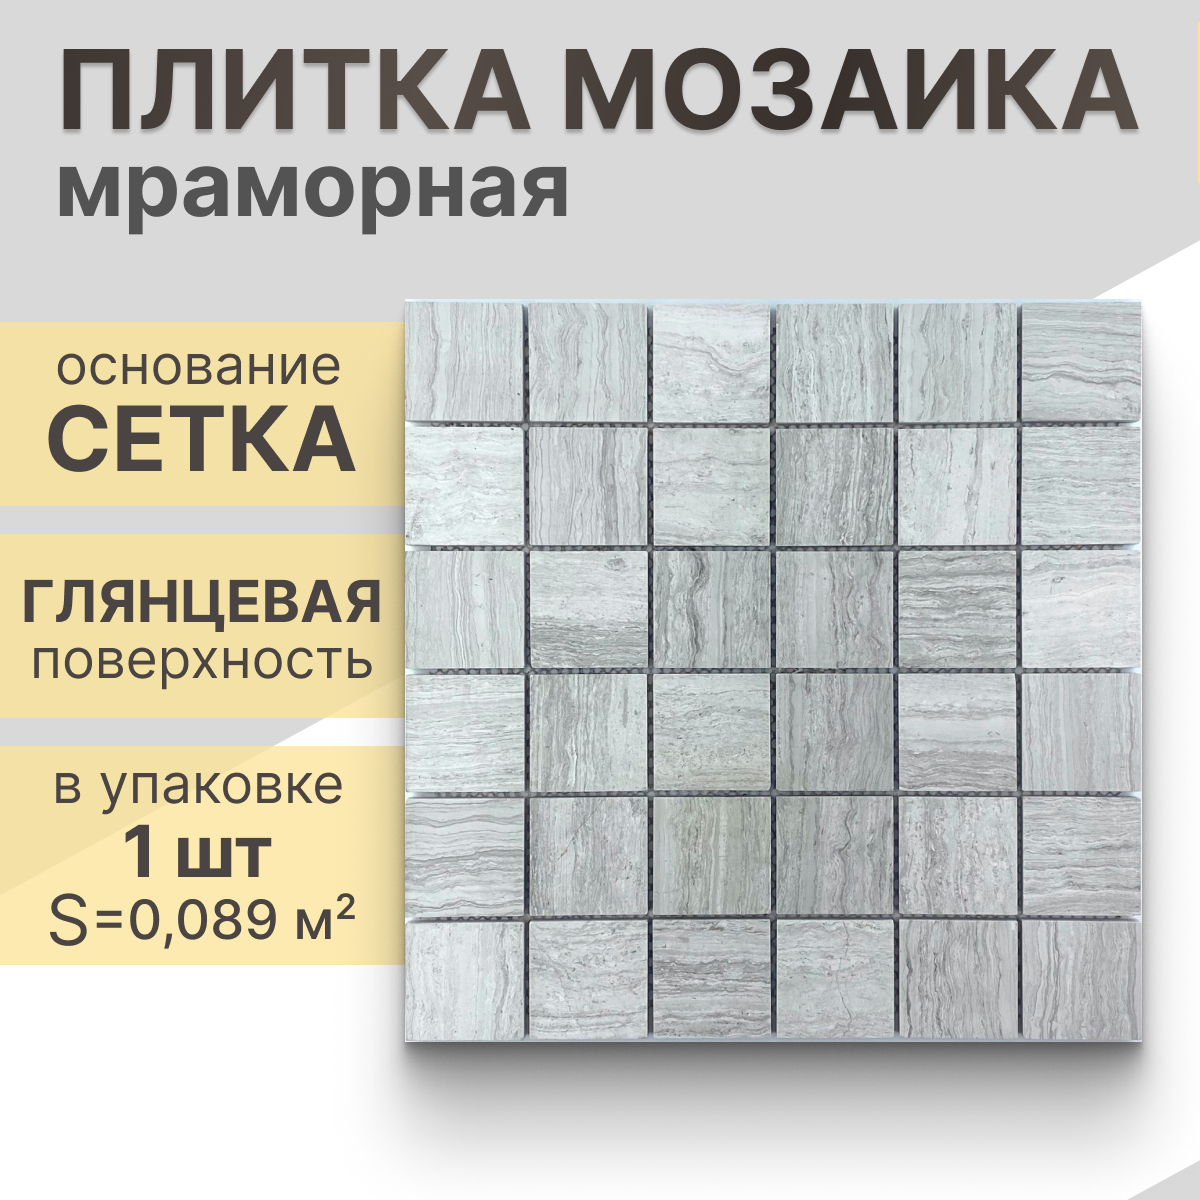 Мозаика (мрамор) NS mosaic Kp-761 29.8X29,8 см 1 шт (0,089 м²)